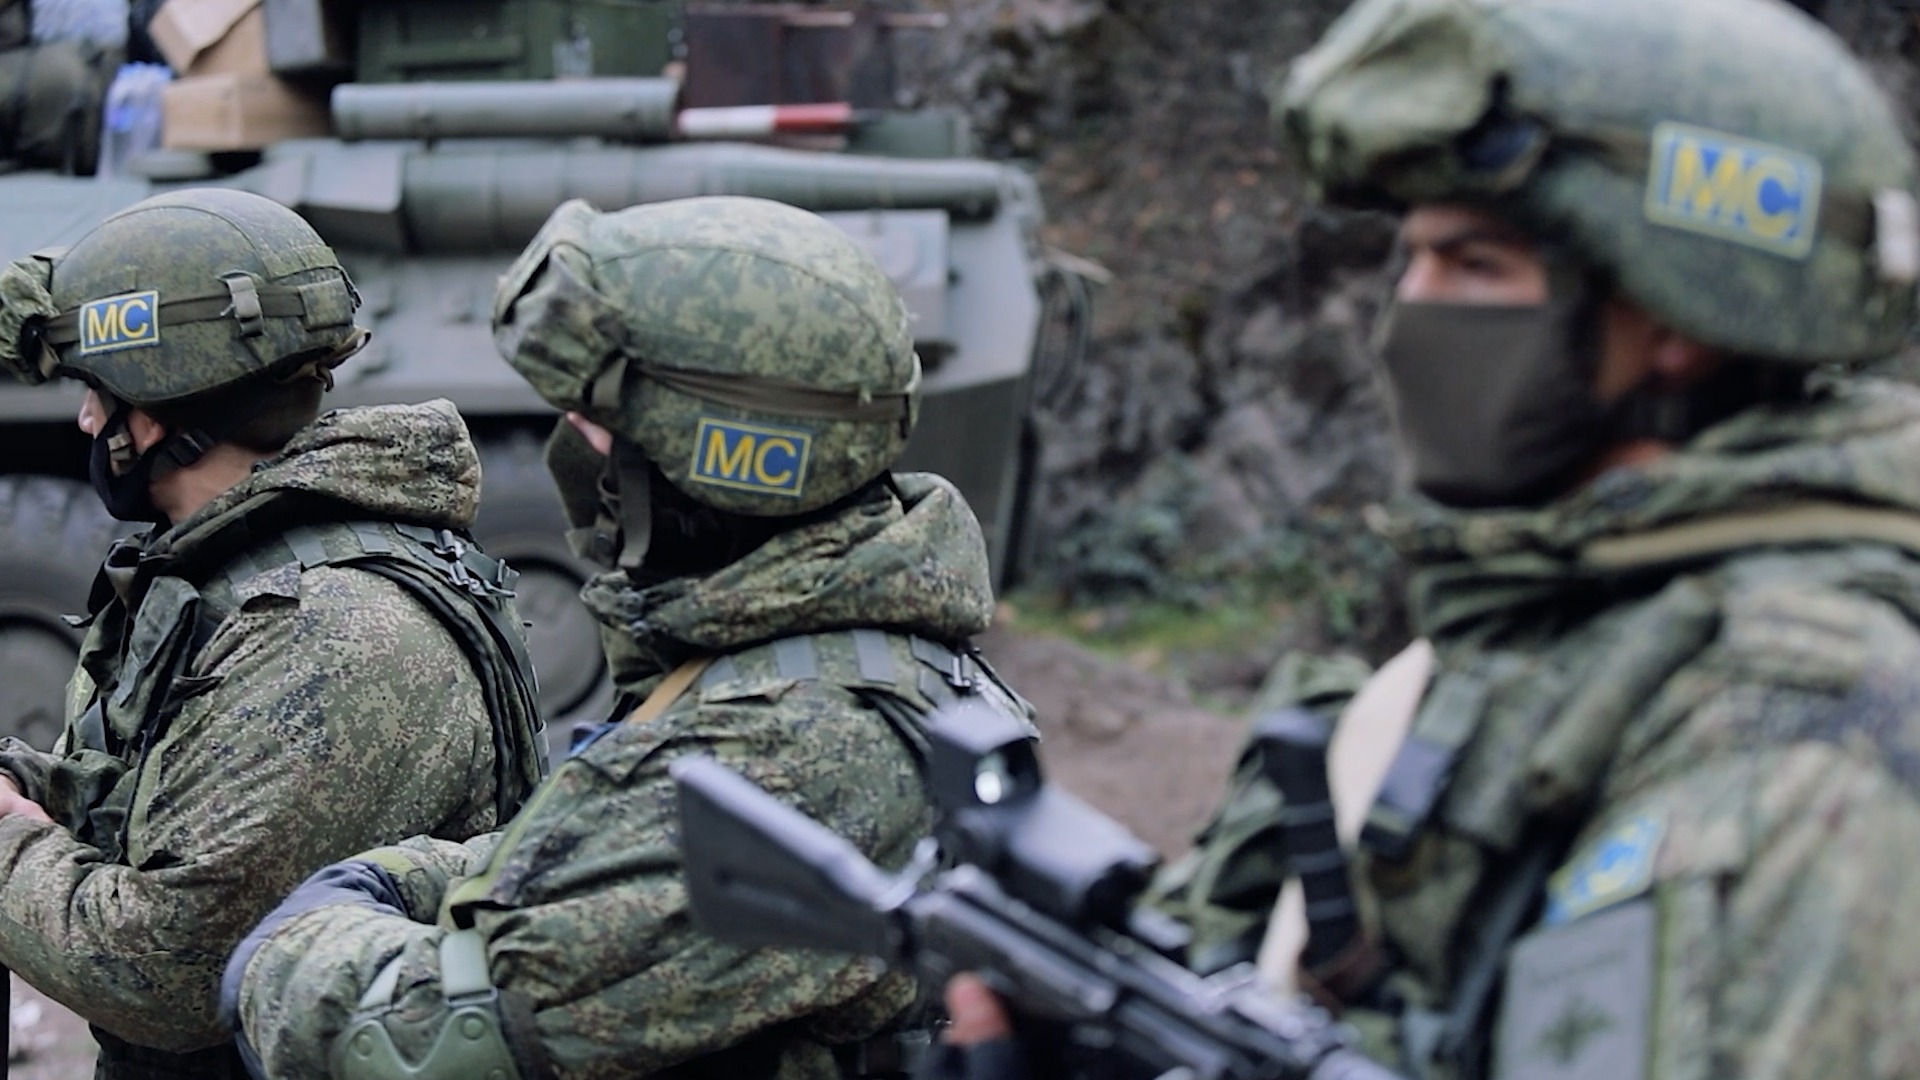 Ռուսաստանի ՊՆ-ը հաստատել է, որ Շուշիի հատվածում ադրբեջանական կողմը կրակել է 4 արցախցիների վրա